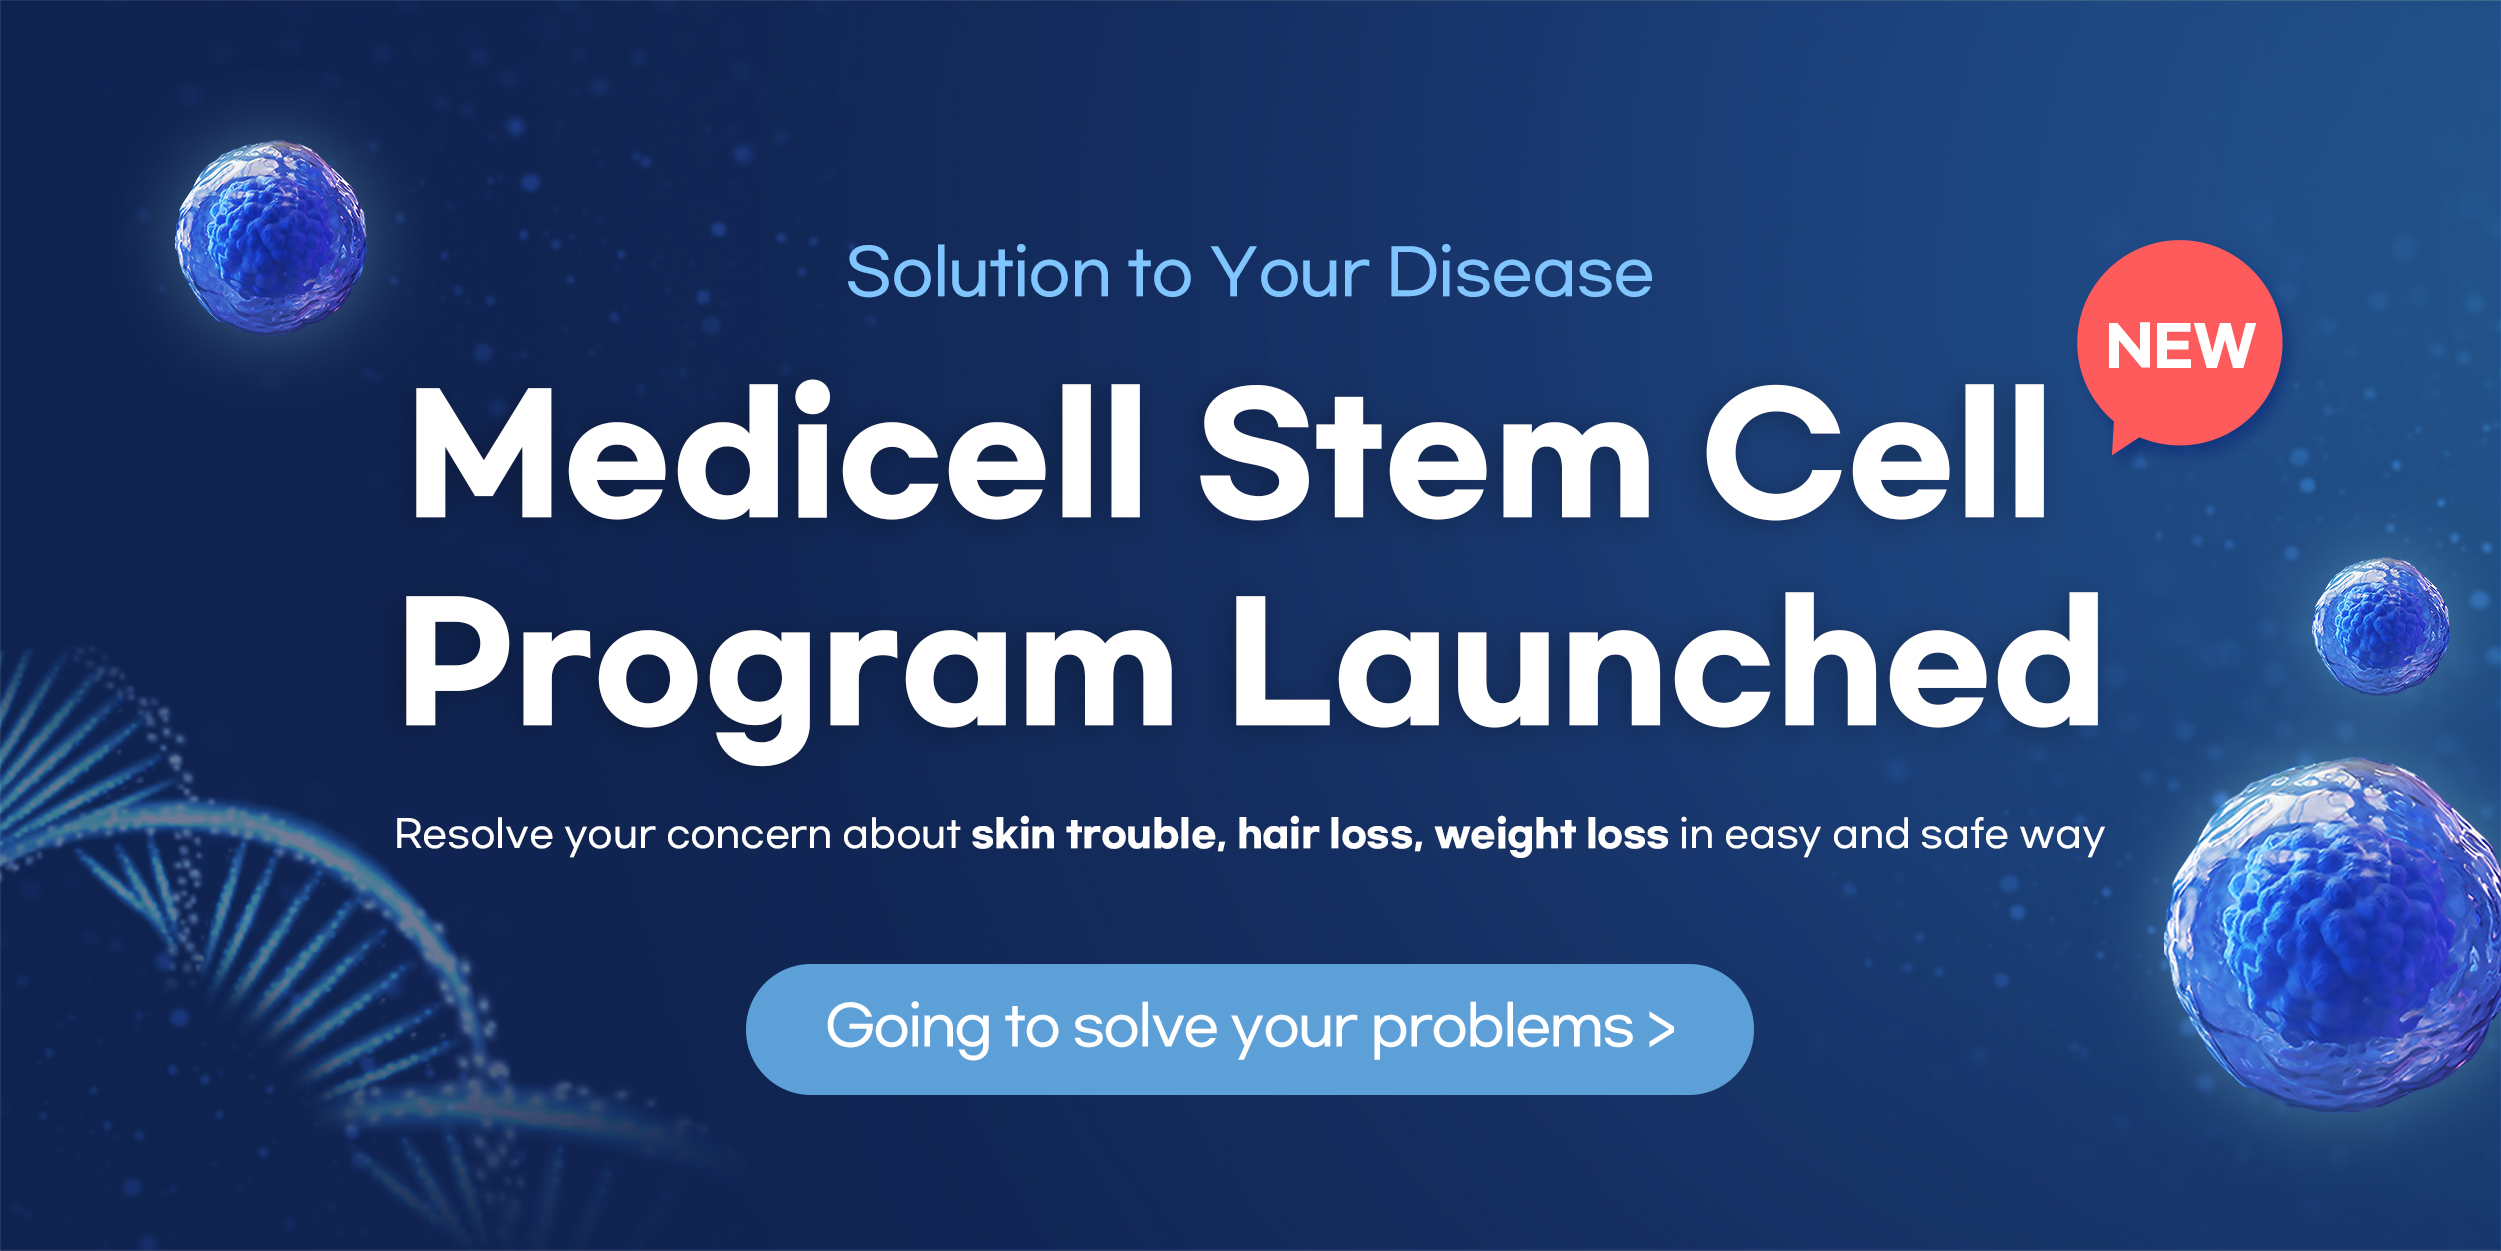 Medicell stem cell